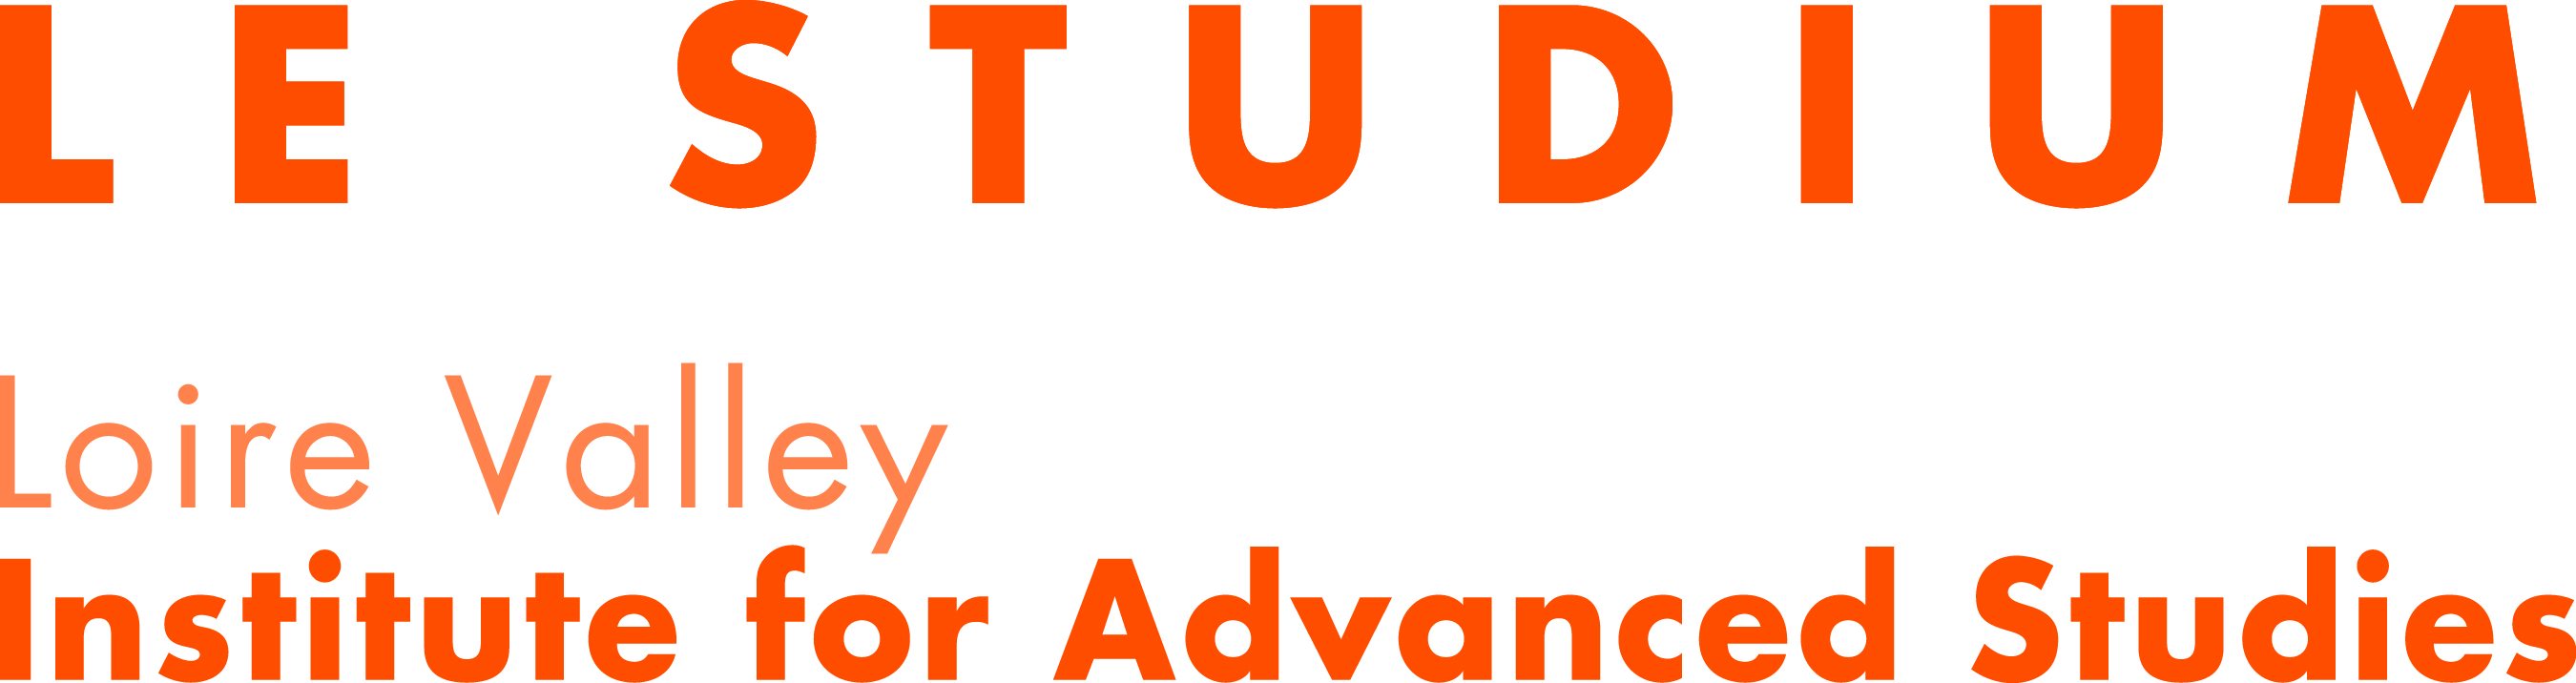 Logo_studium